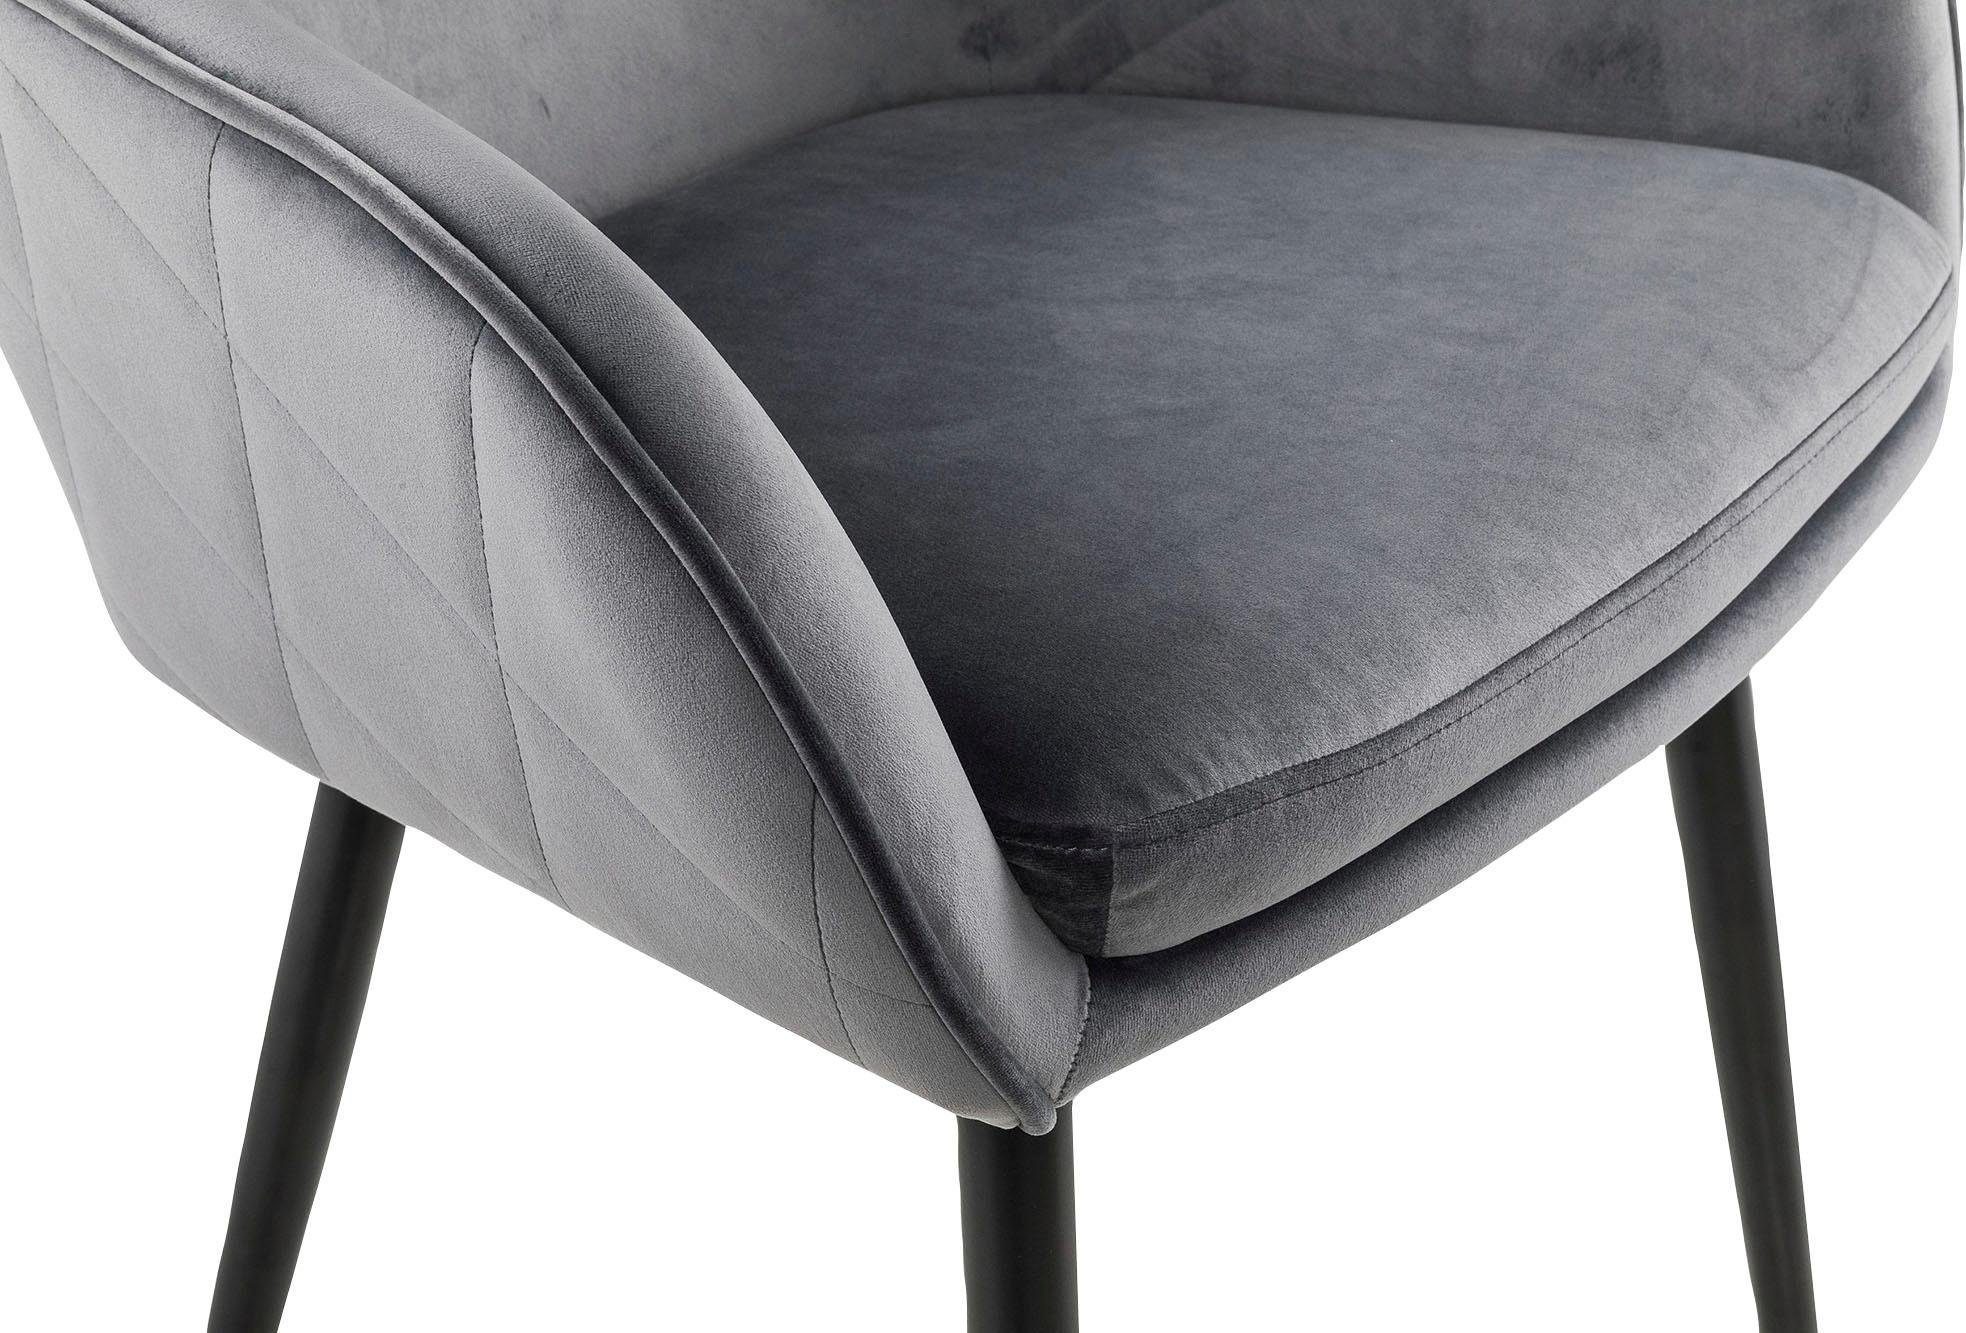 SalesFever Armlehnstuhl, mit Diamantsteppung auf Rückseite grau/schwarz der grau 